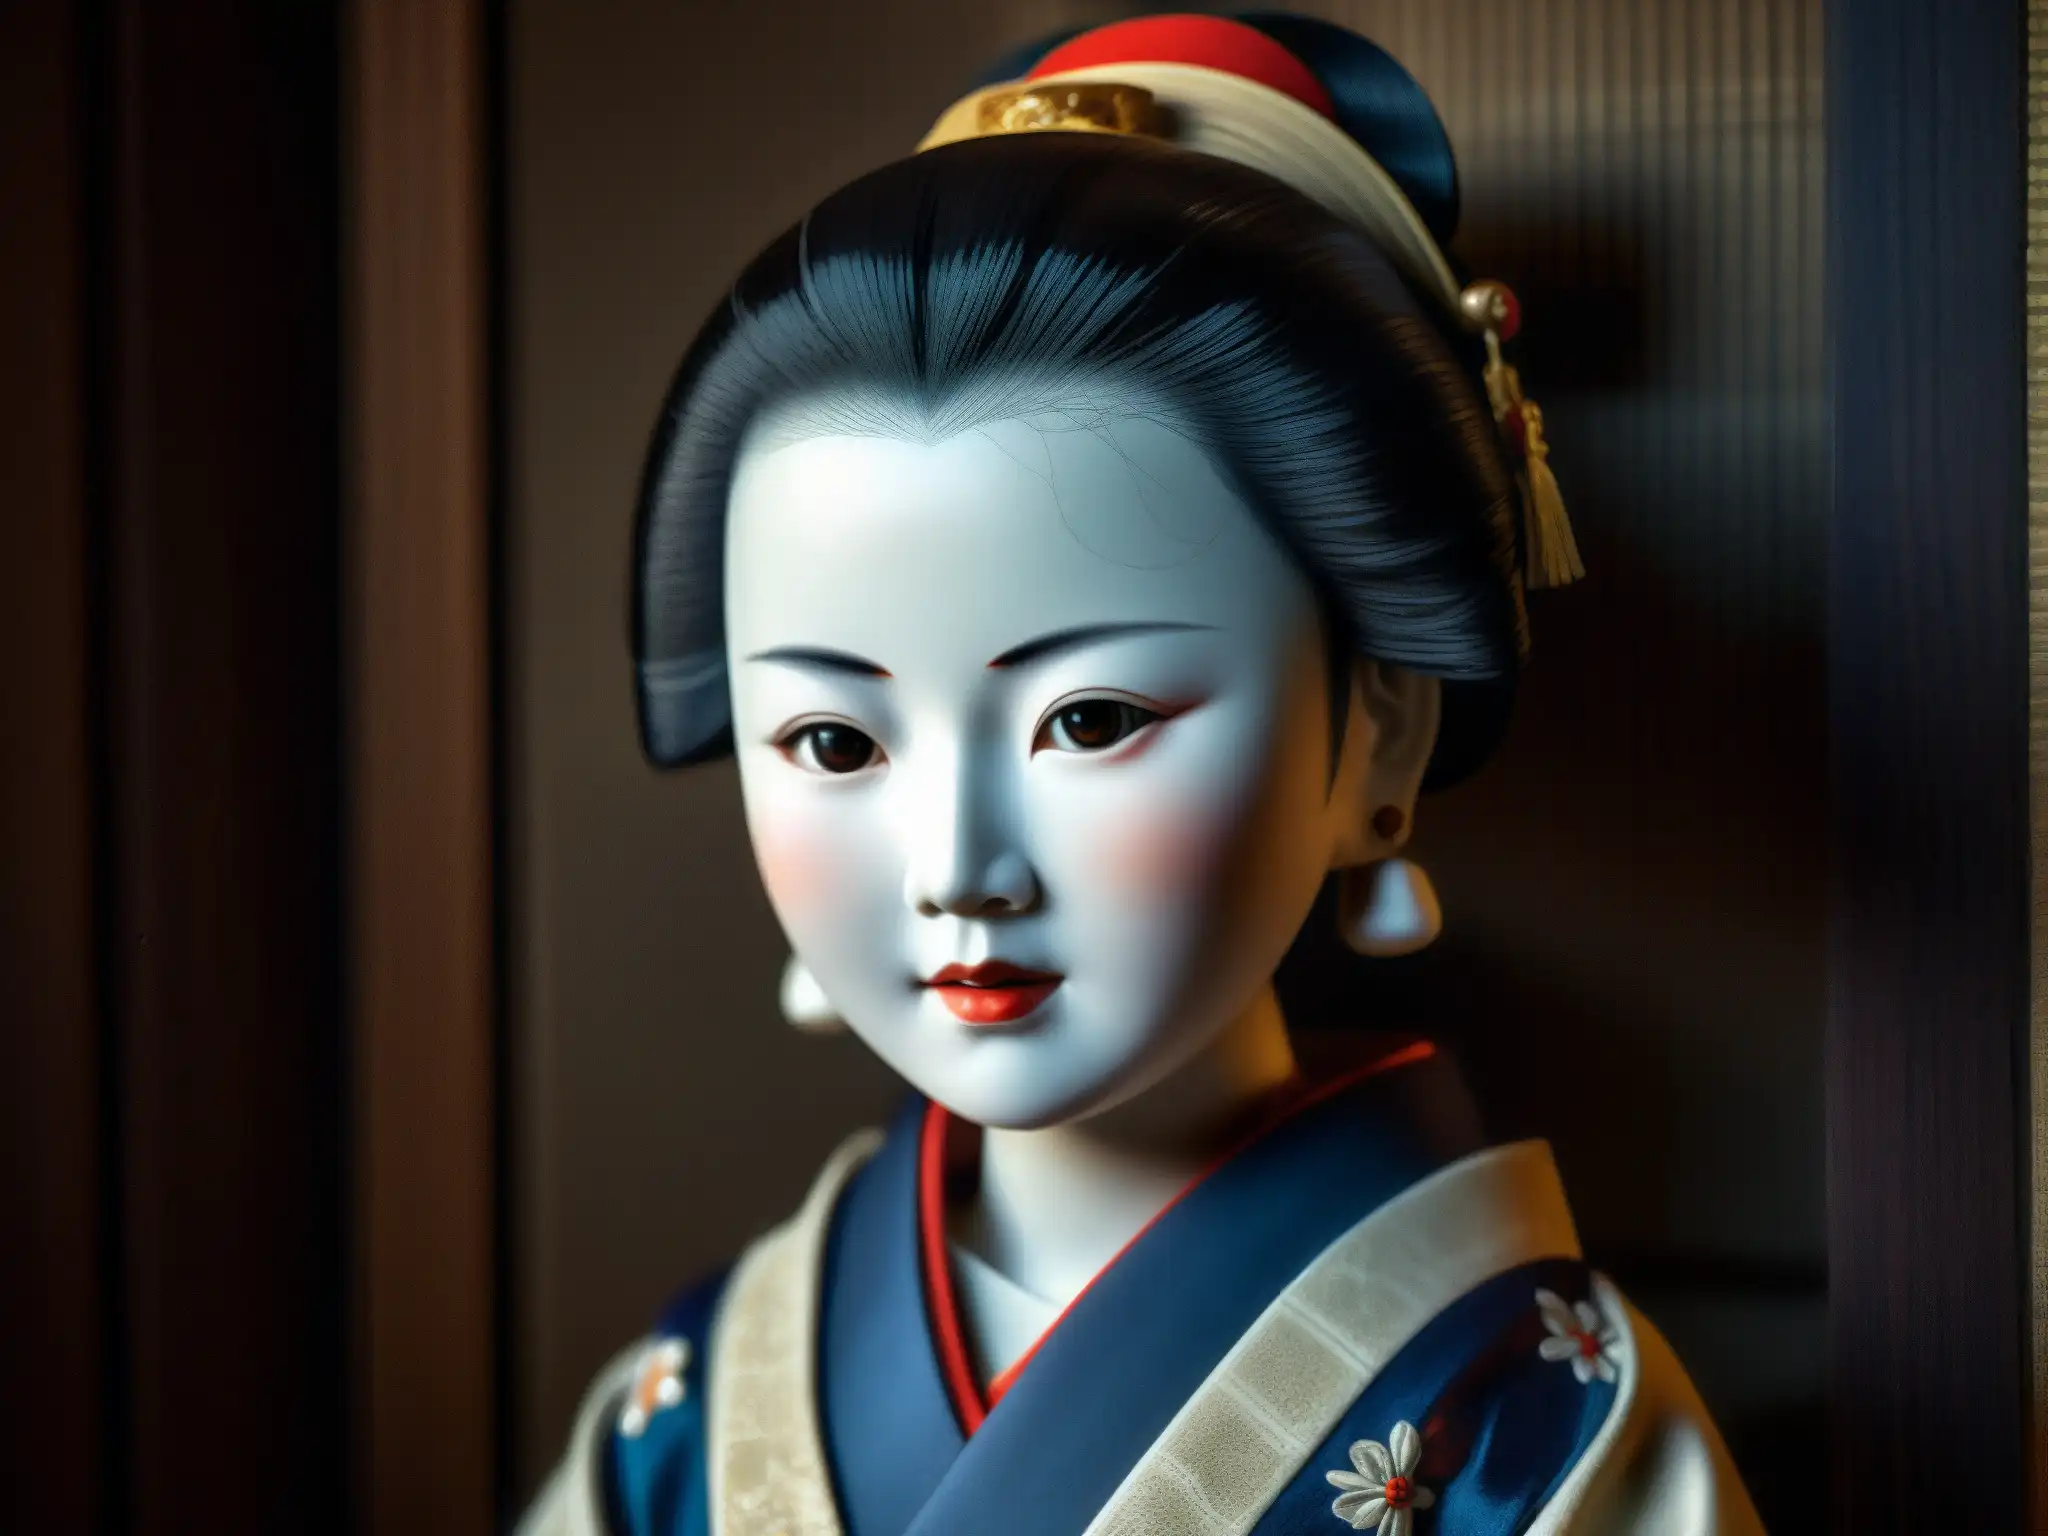 Detalles fascinantes de la muñeca Okiku, con su rostro de porcelana, ropa tradicional y misteriosas grietas